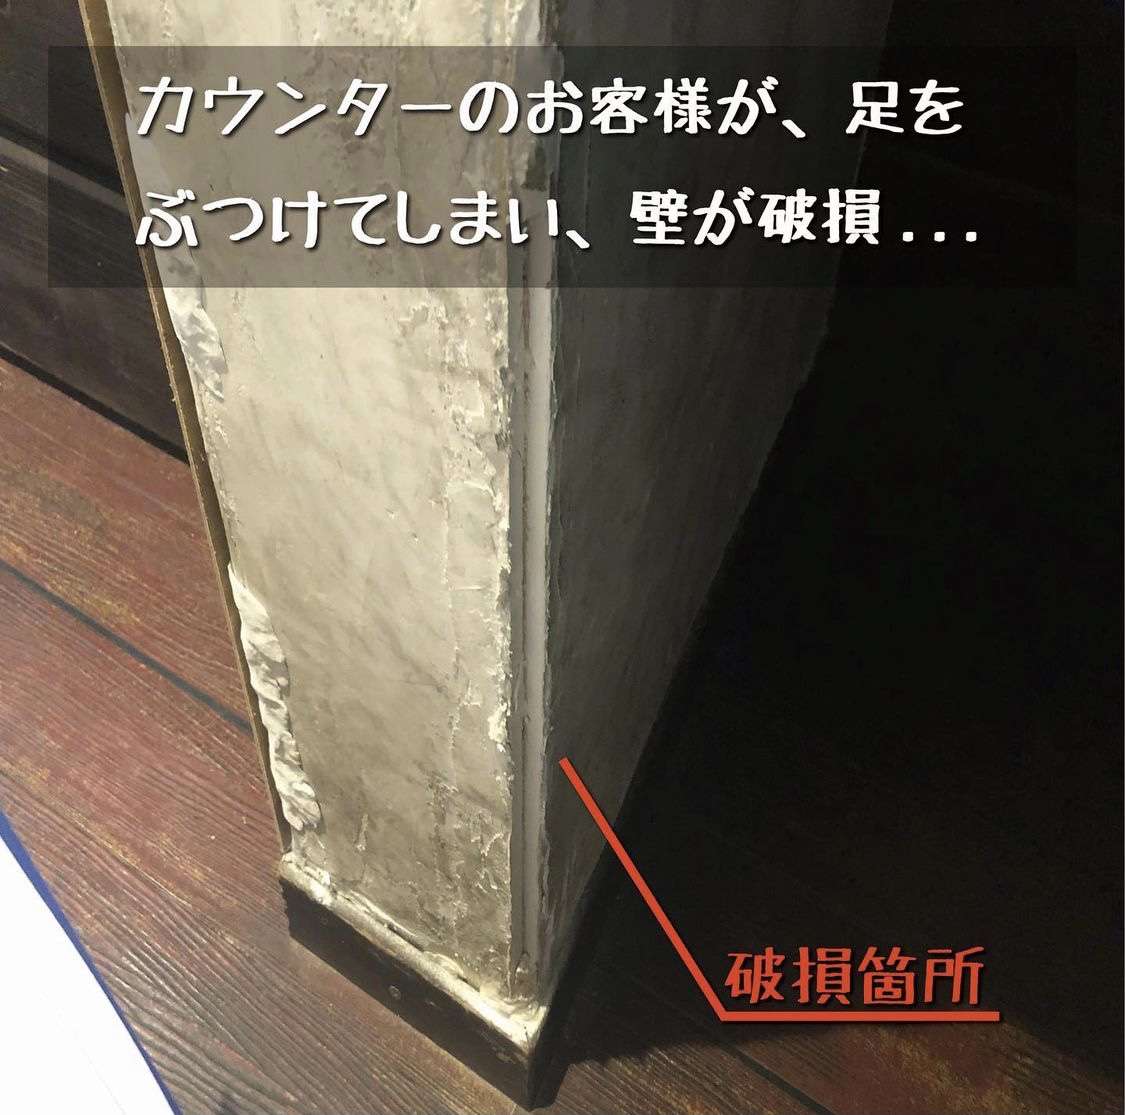 【奈良県】お客様が店内を壊してしまい壁が破損した被害でお困りの方は住まいるドクターへ